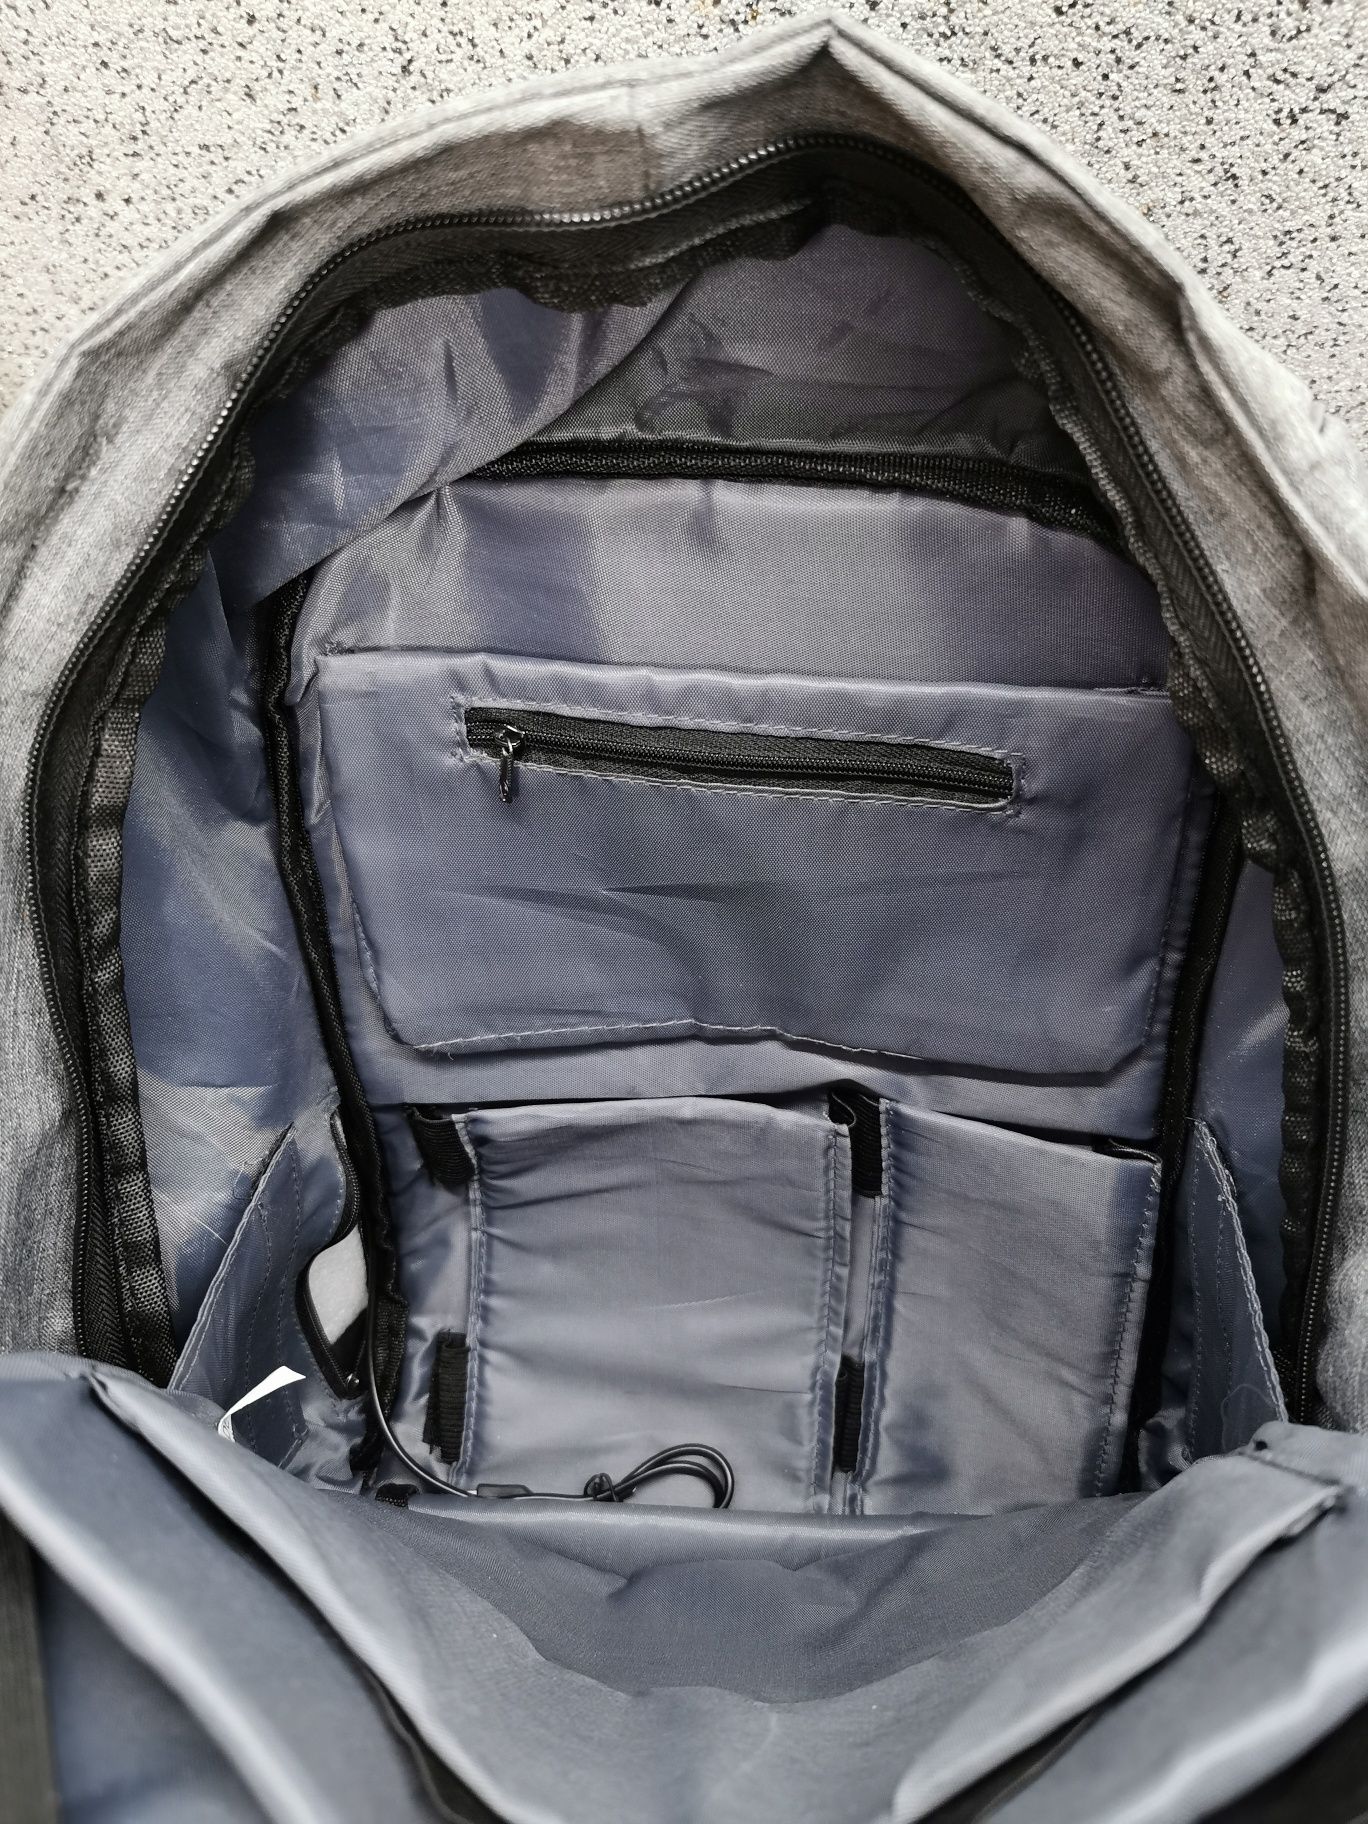 Plecak Vodafone sportowy podróżny szkolny na laptopa